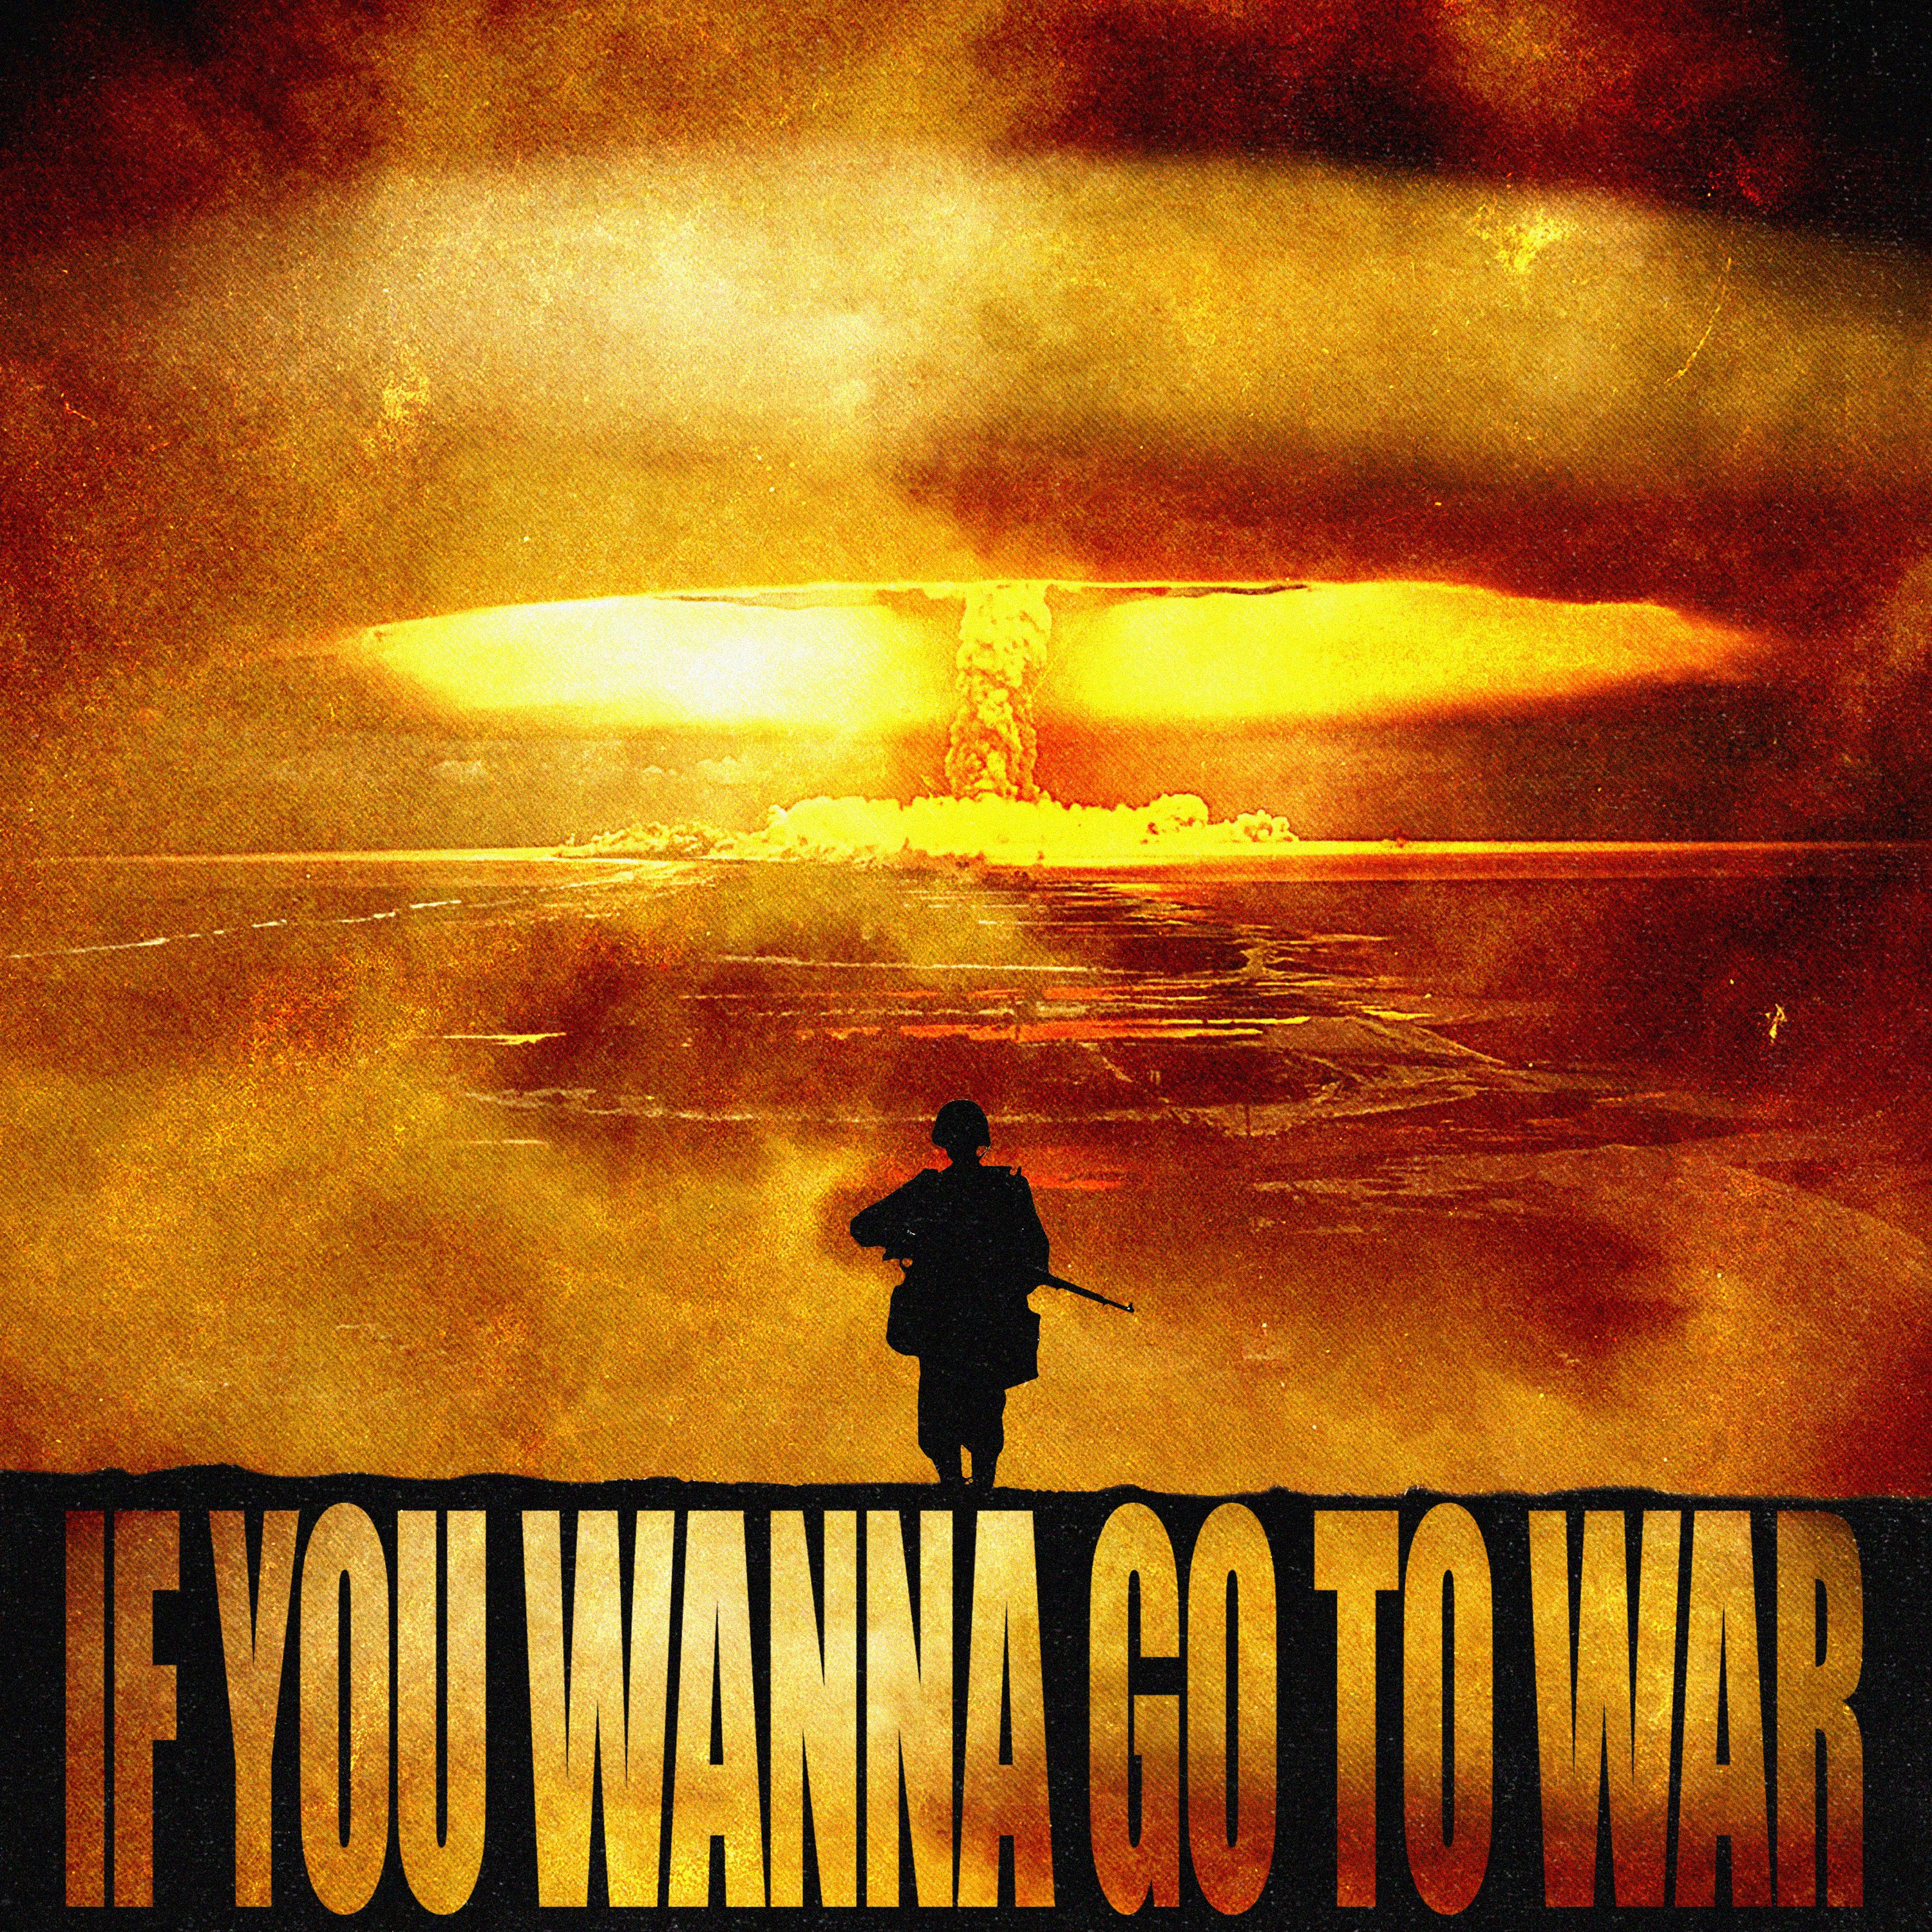 Budata IF U WANNA GO TO WAR